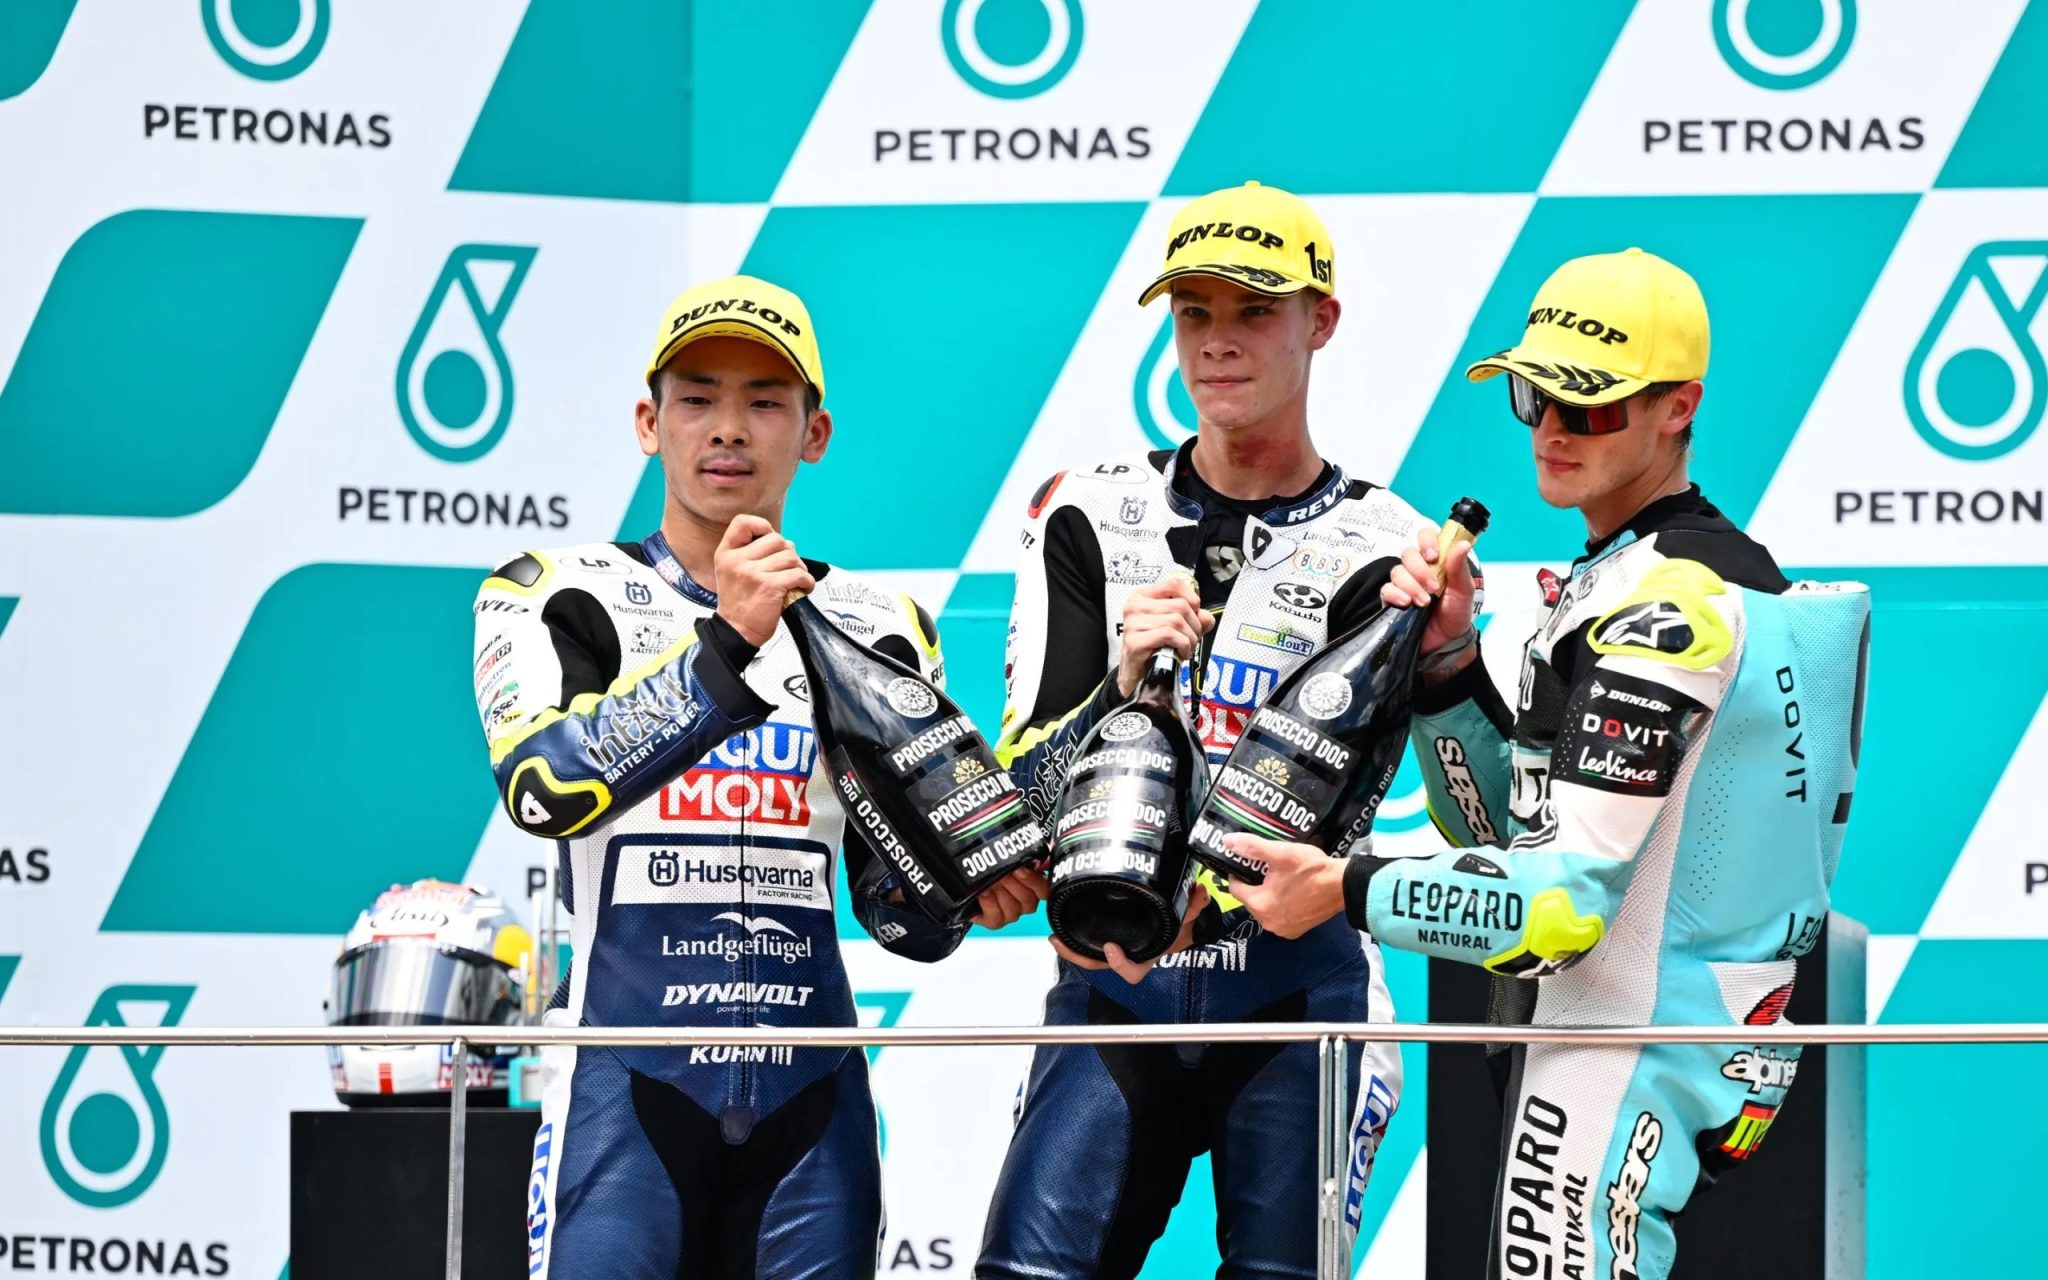 Moto3 podium